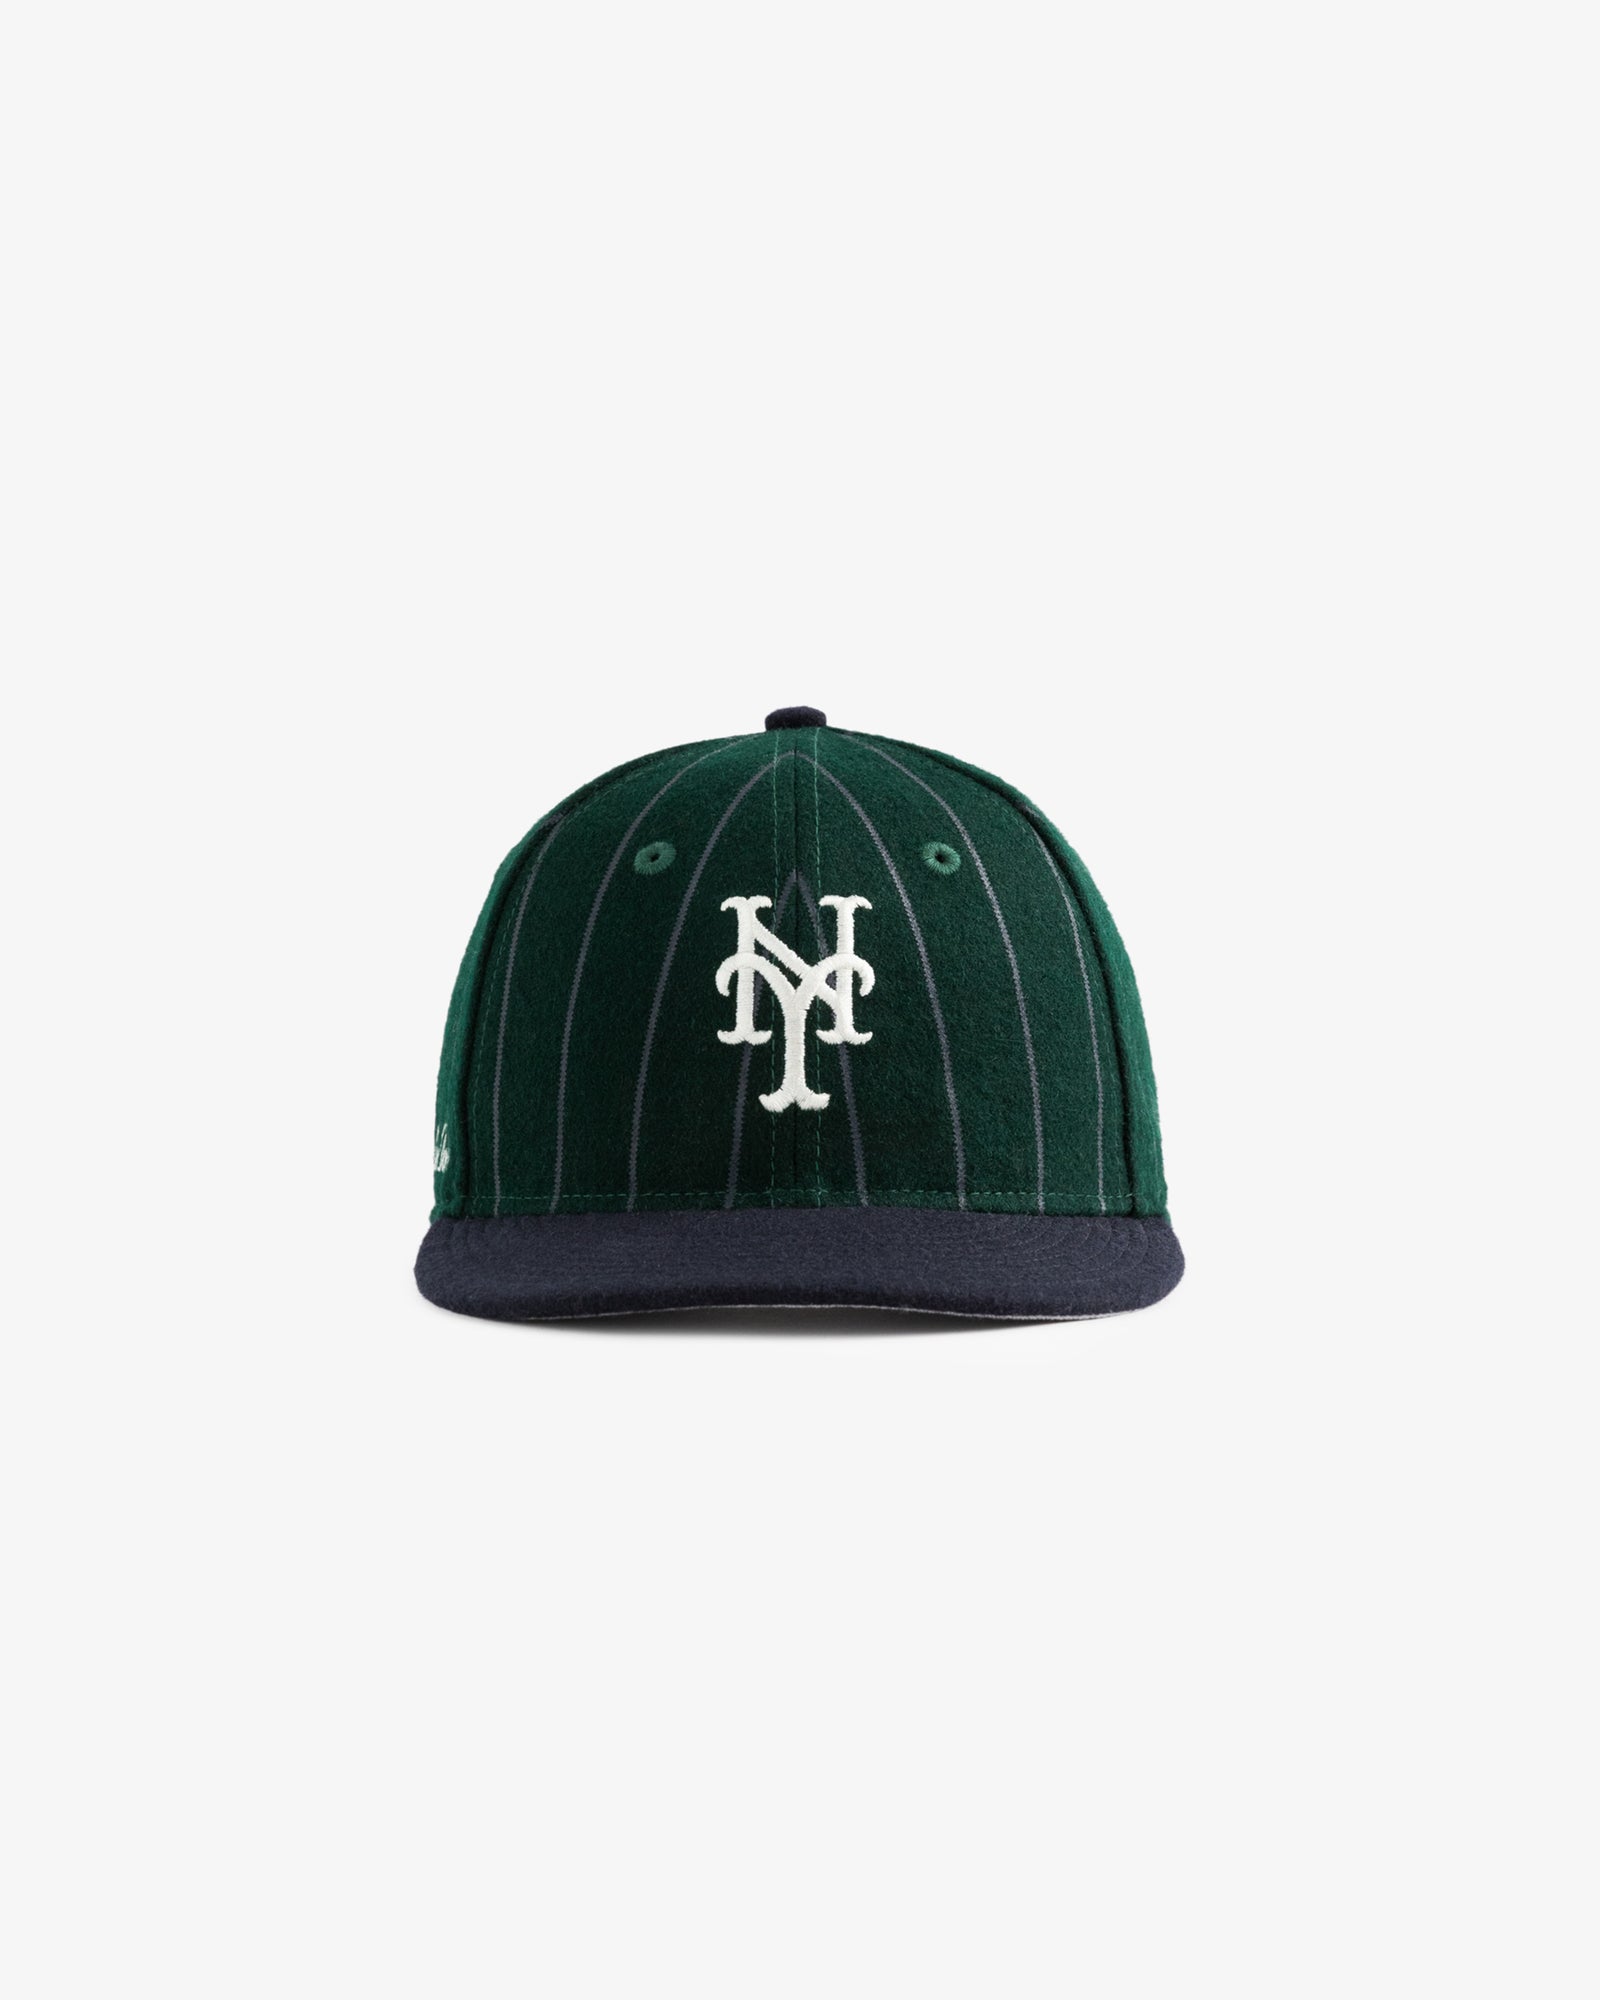 ALD / New Era Wool Mets Hat